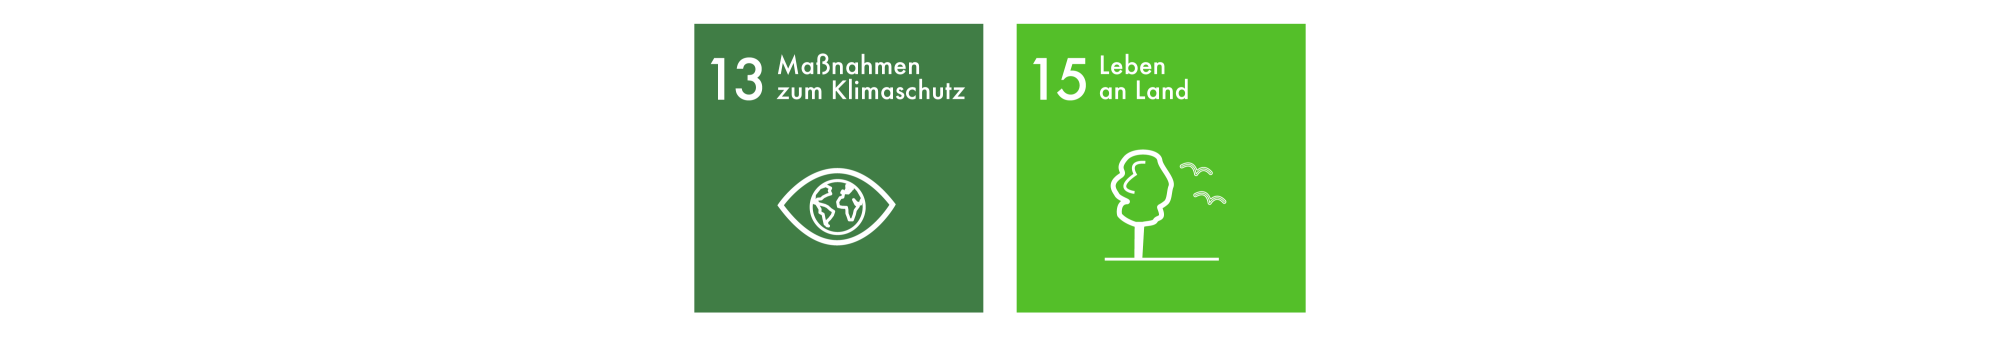 Sustainable Development Goals 13-15 DE